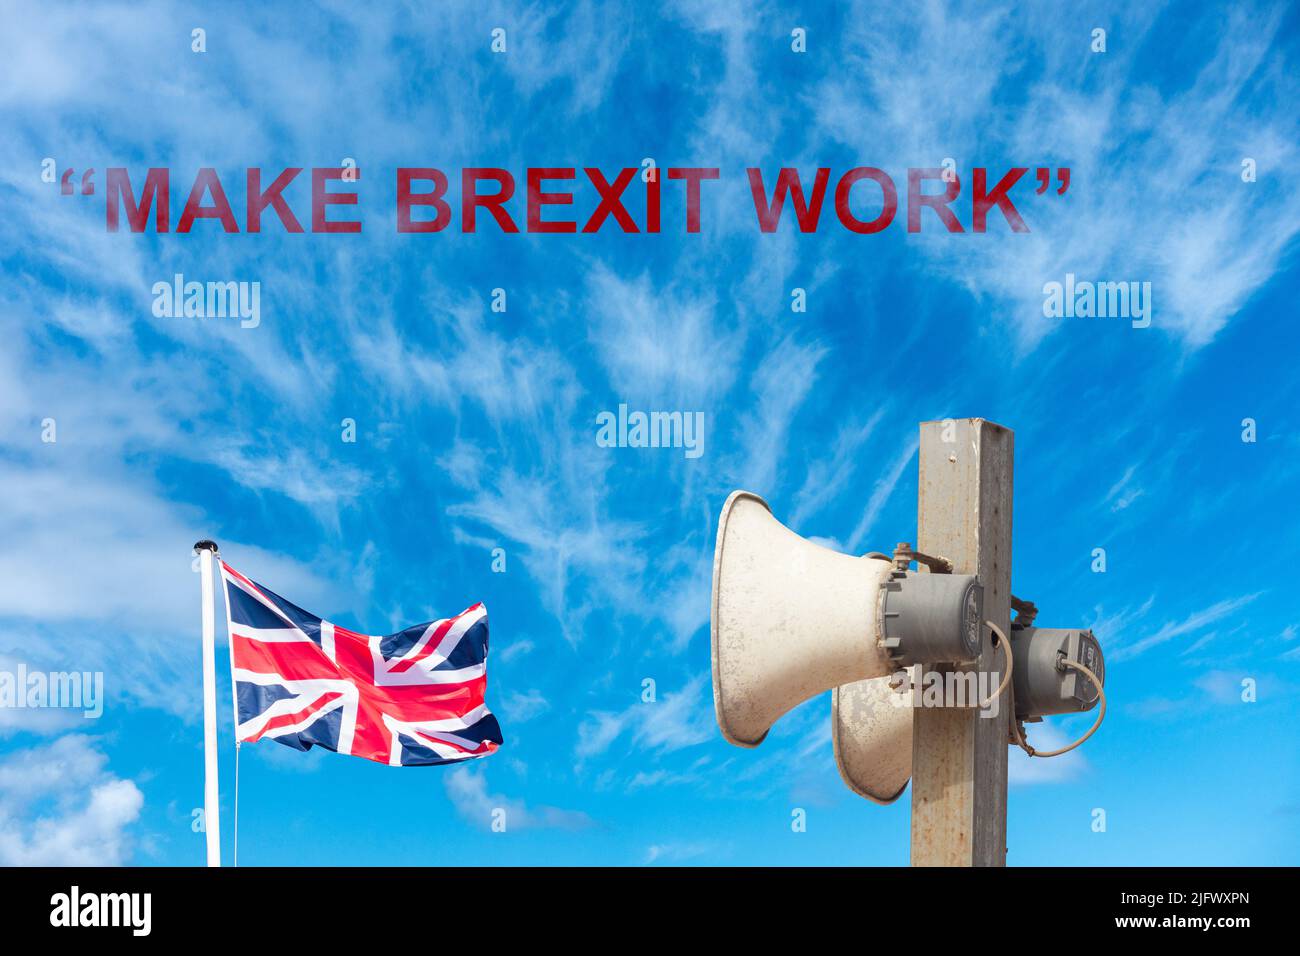 Eslogan del Partido Laborista, 'Hacer que el Brexit funcione', con la bandera del Reino Unido y los altavoces en voz alta contra el cielo azul. Foto de stock